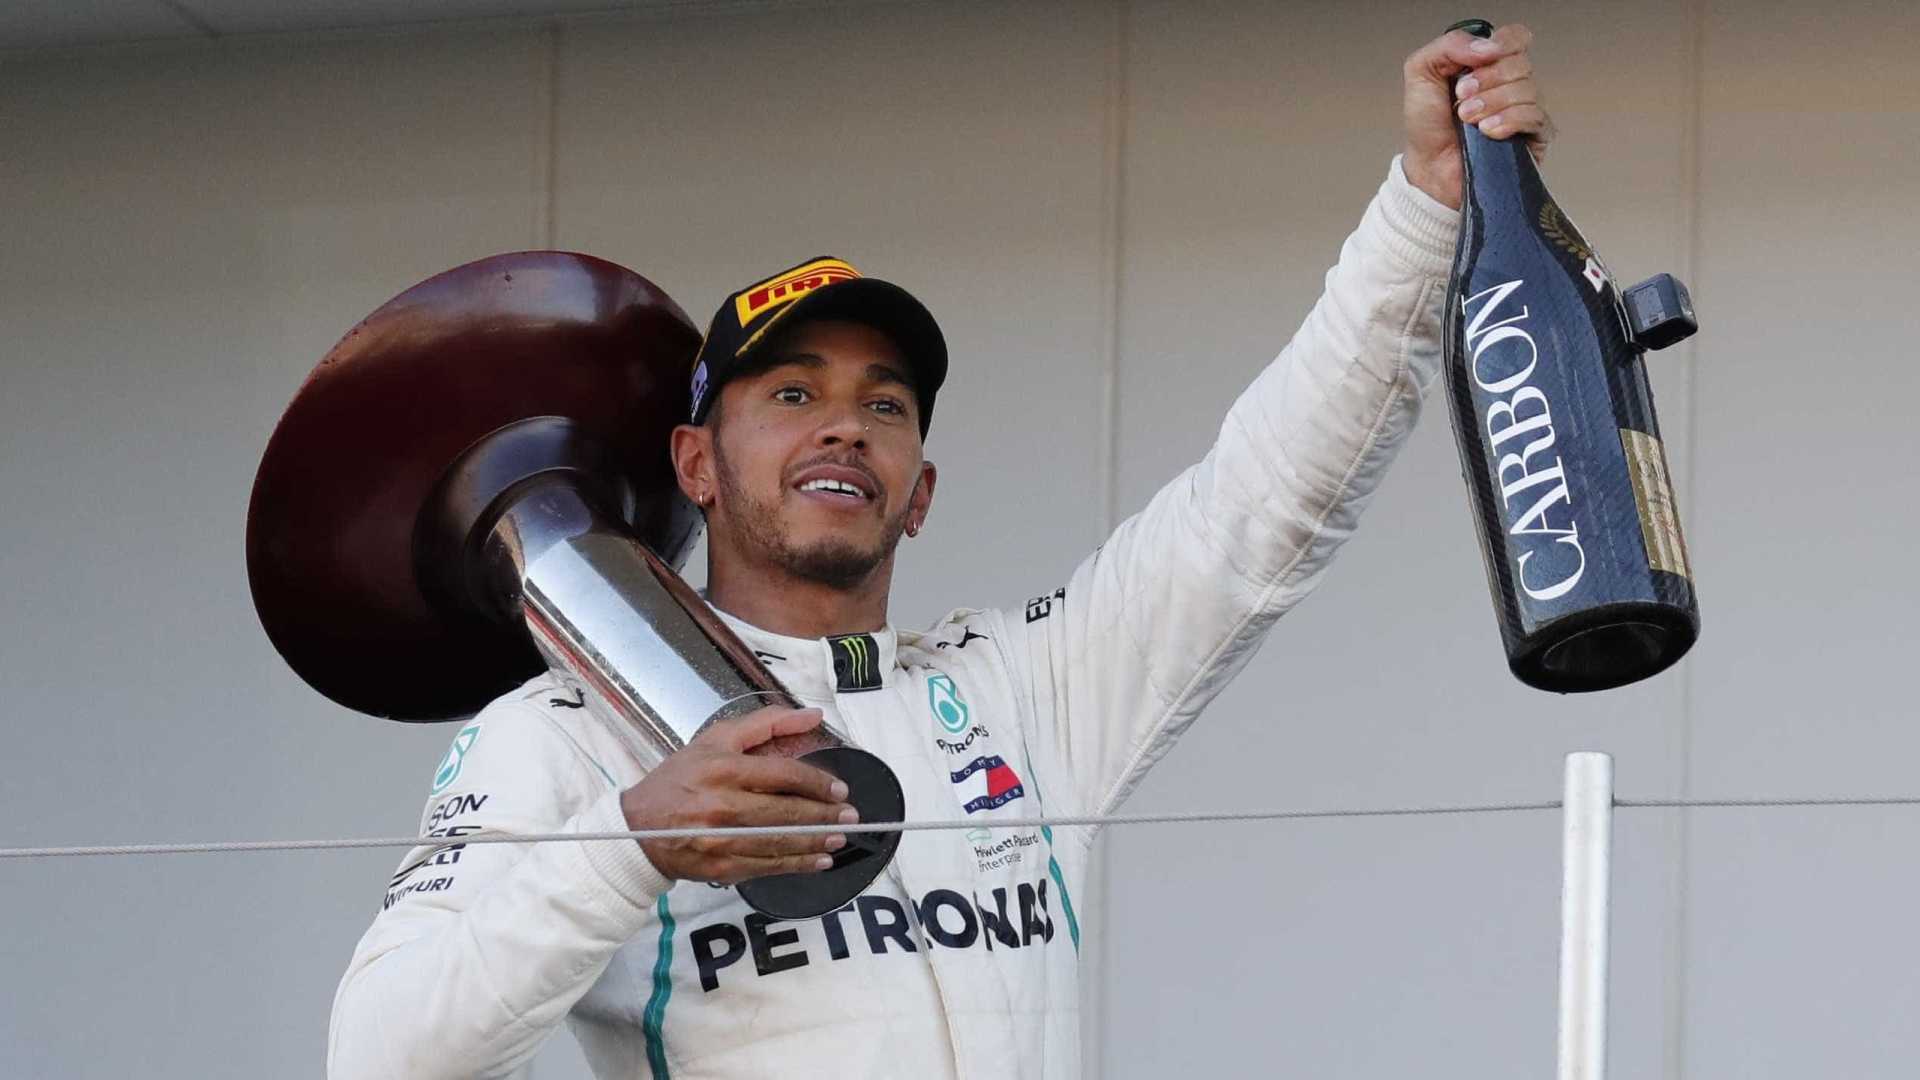 Hamilton vence GP do Japão e abre 67 pontos de vantagem sobre Vettel